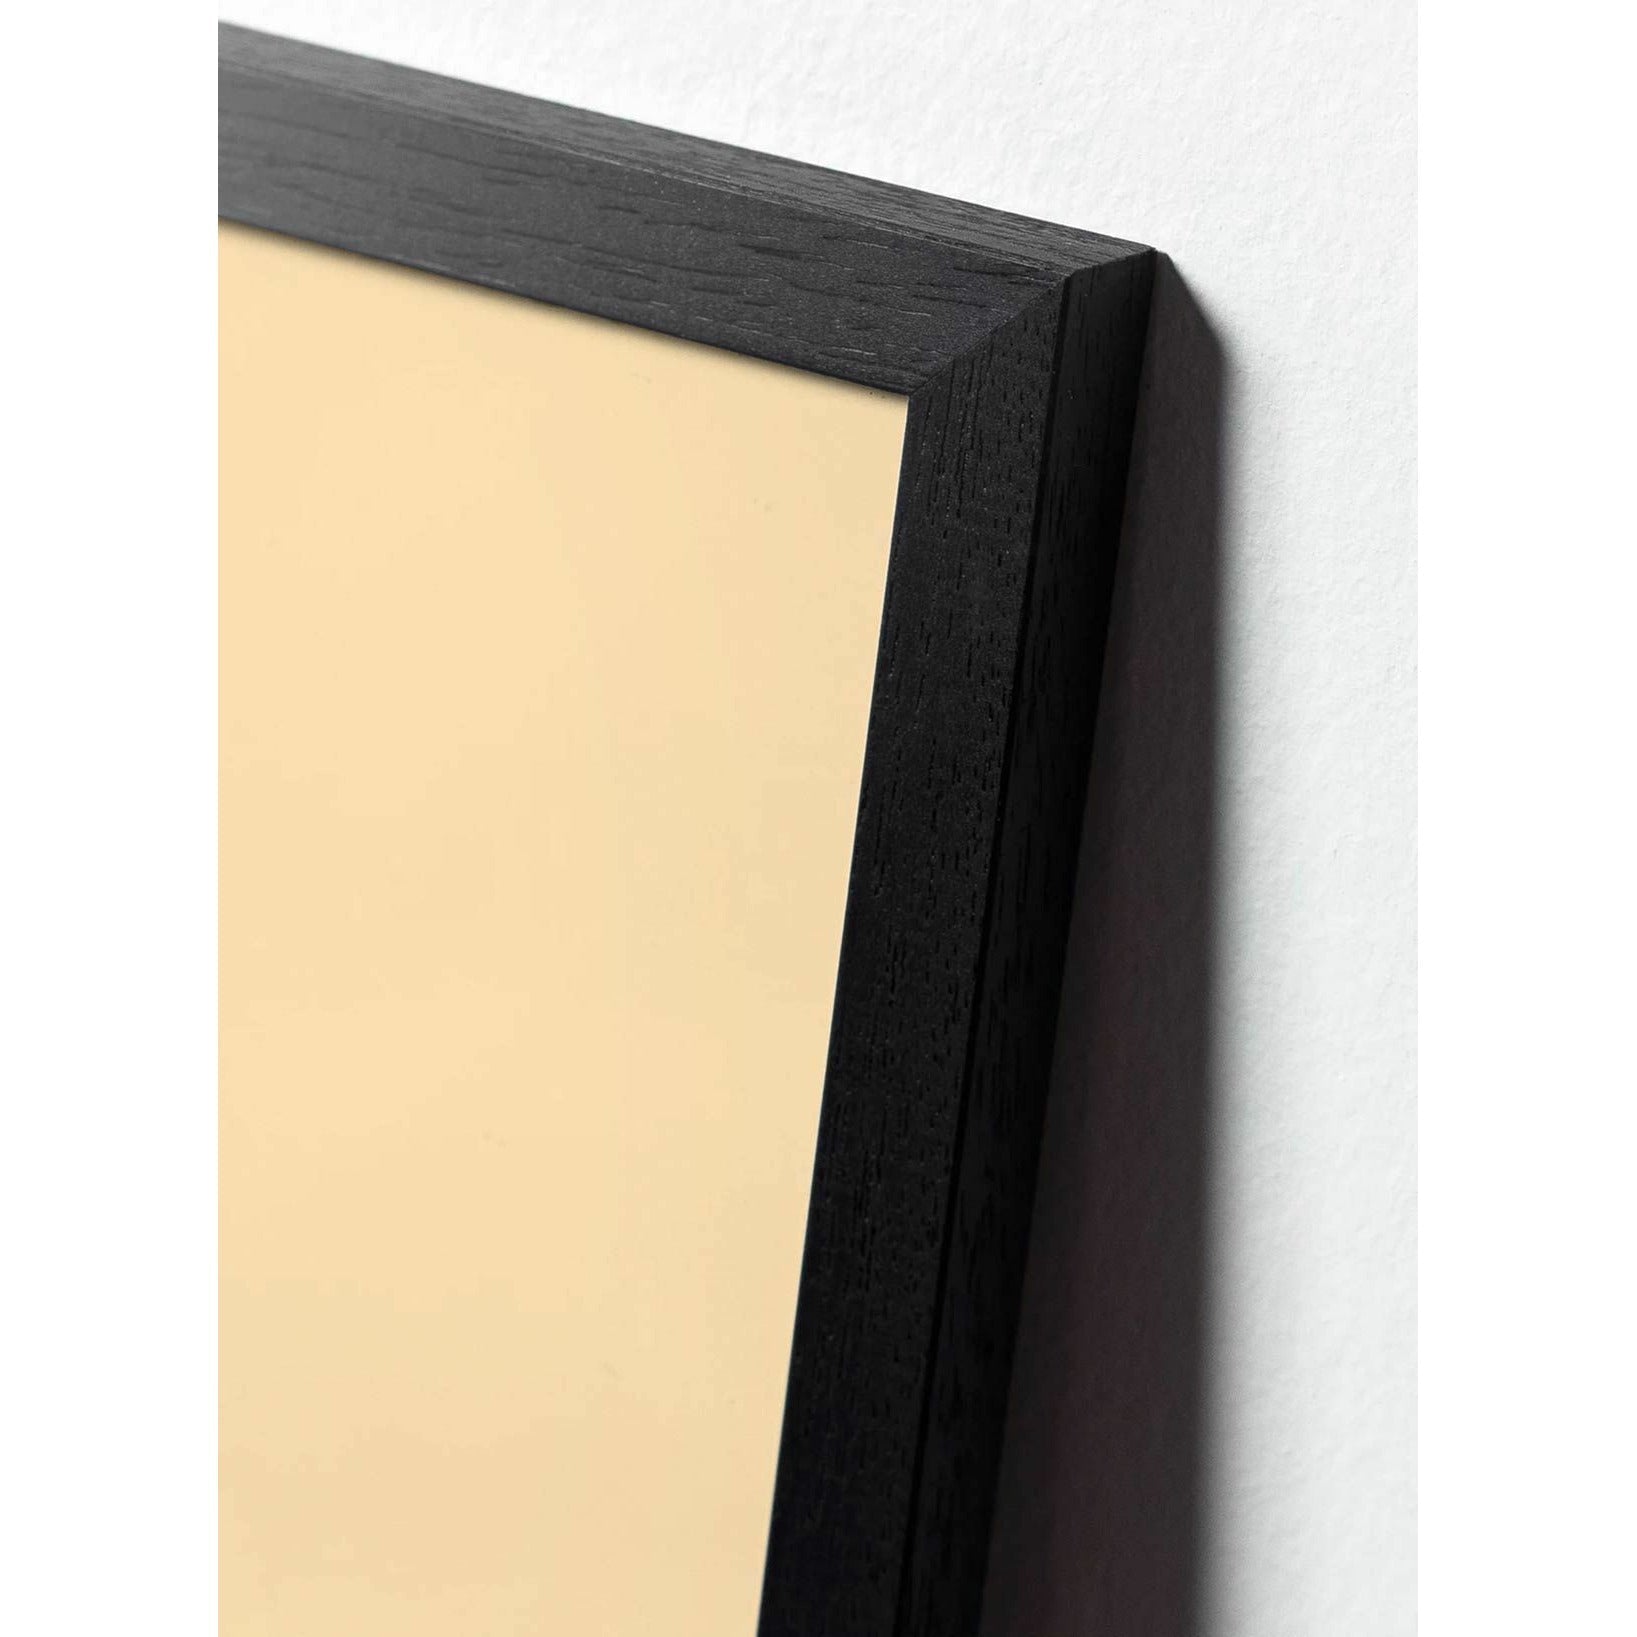 Pomysły plakat klipu na papierze łabędzia, rama w czarnym lakierowanym drewnie 50x70 cm, różowe tło